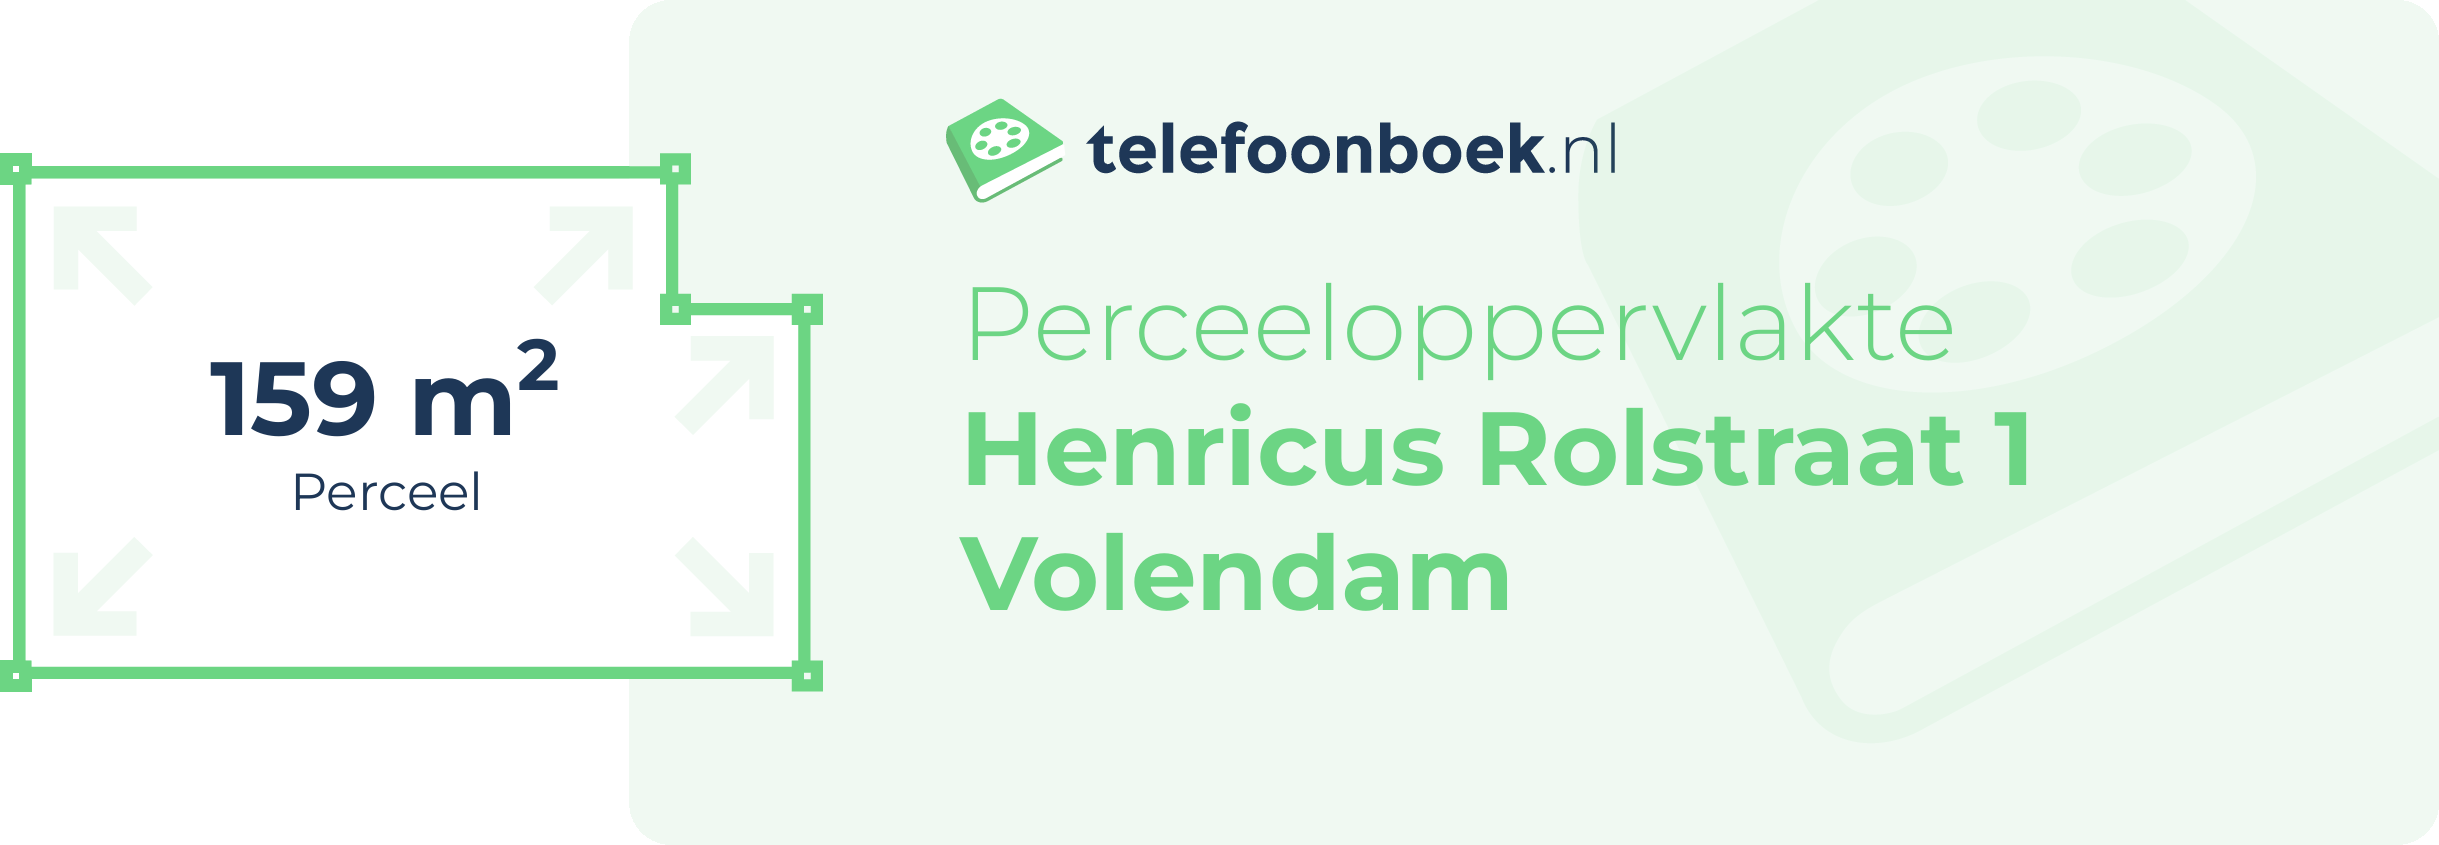 Perceeloppervlakte Henricus Rolstraat 1 Volendam